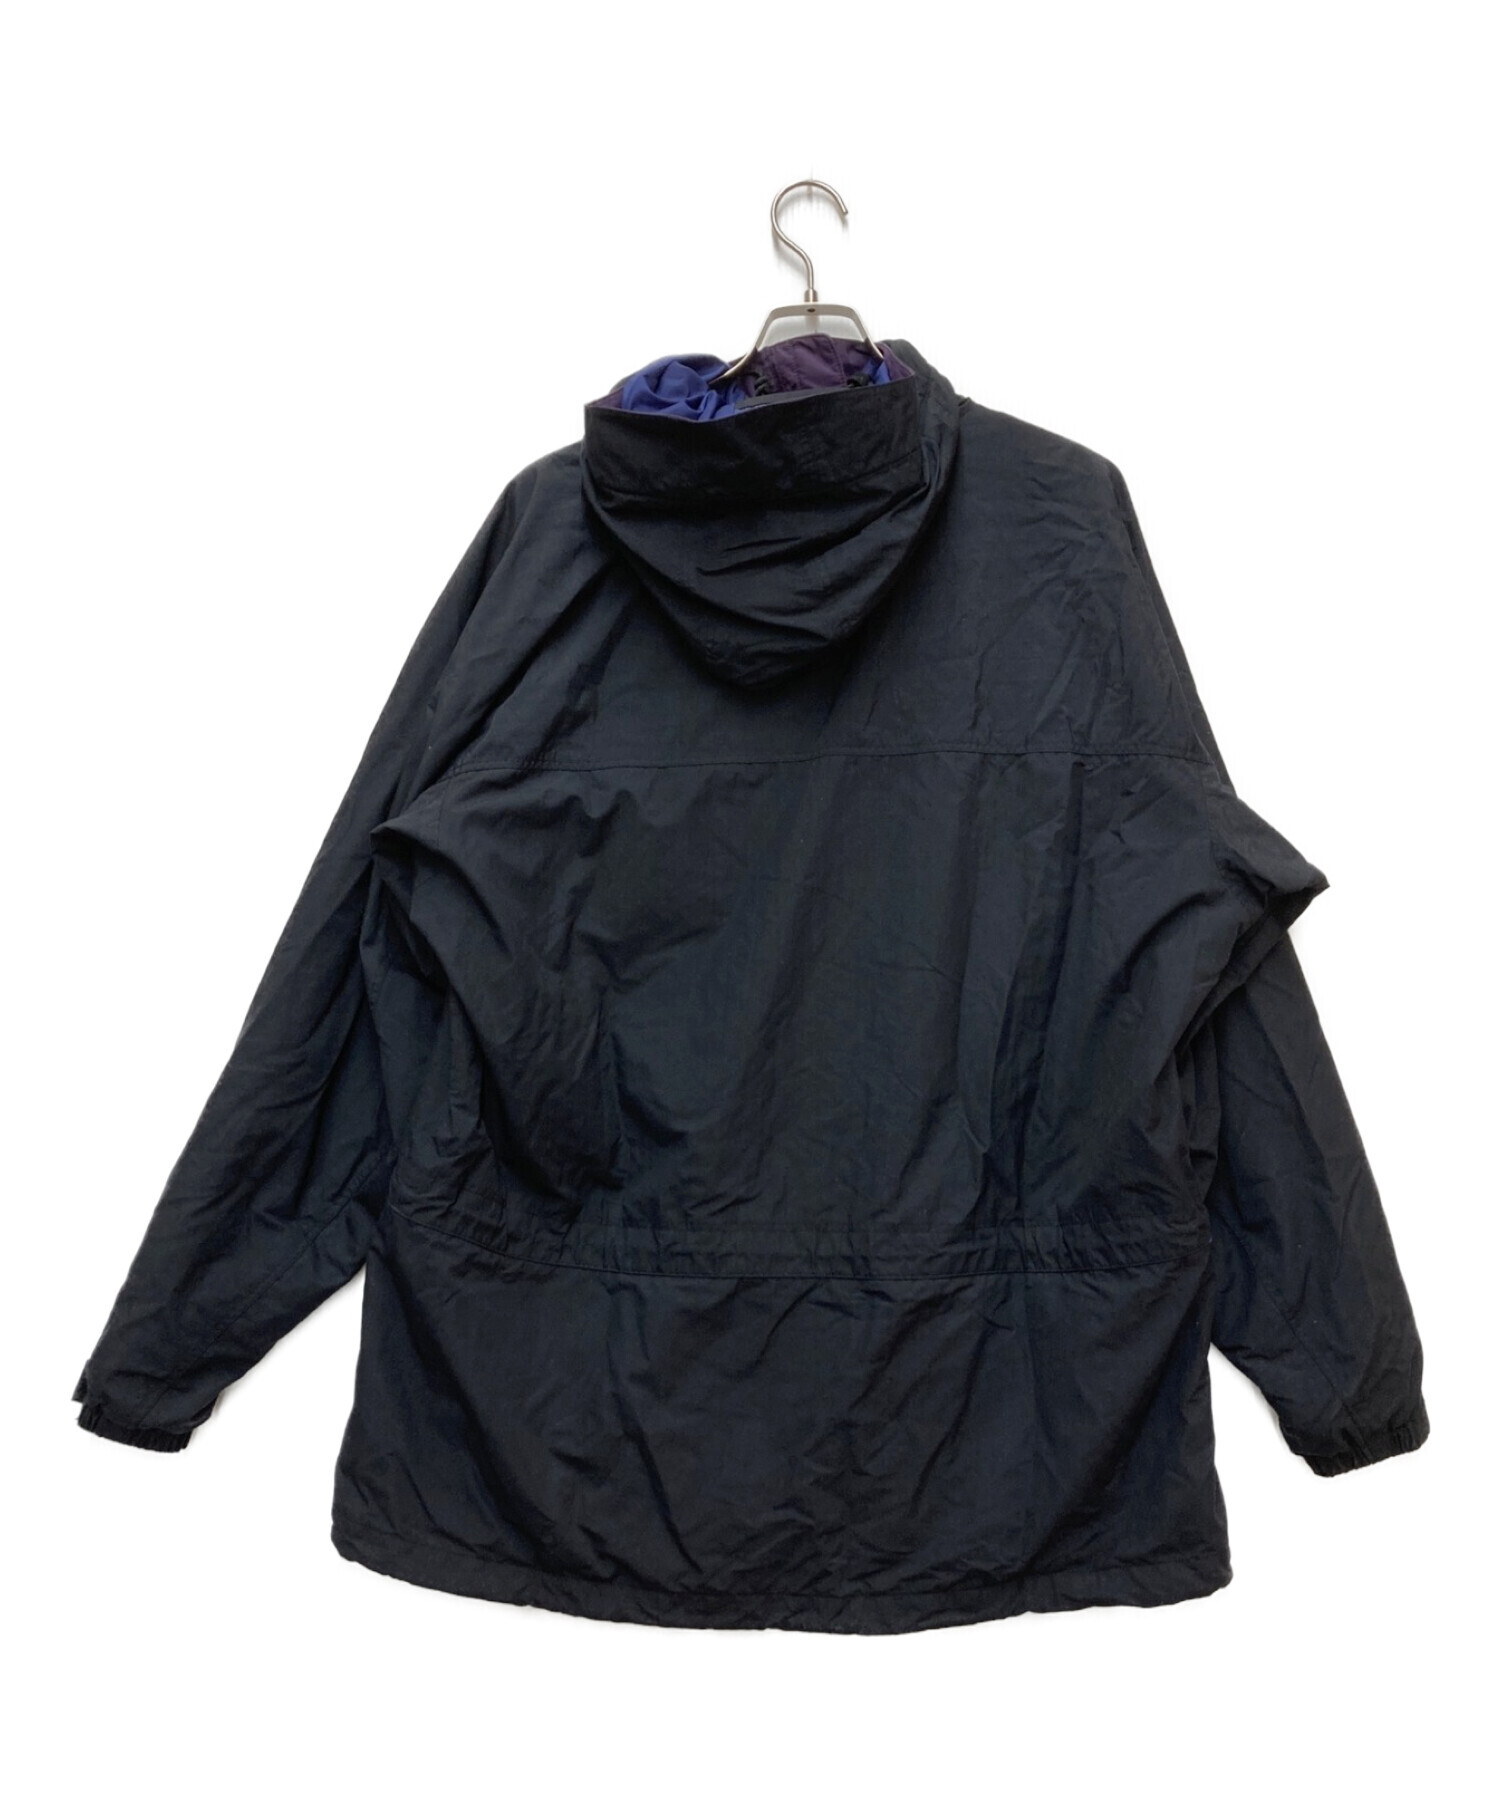 Patagonia (パタゴニア) ストームジャケット ブラック サイズ:L